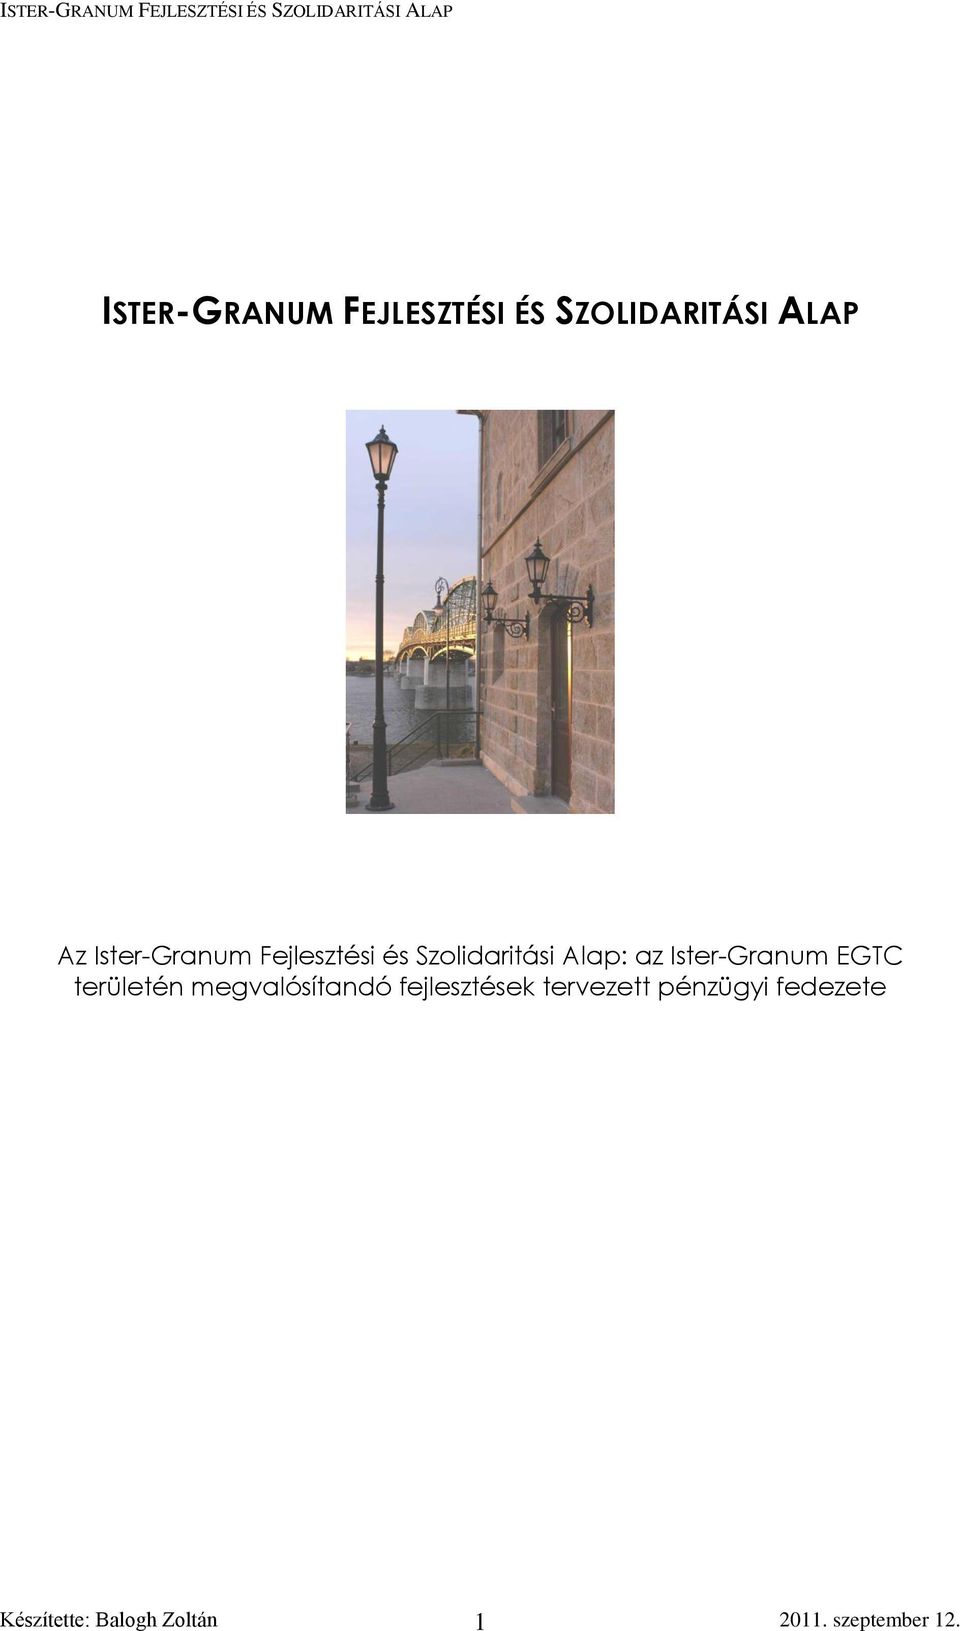 Ister-Granum EGTC területén megvalósítandó